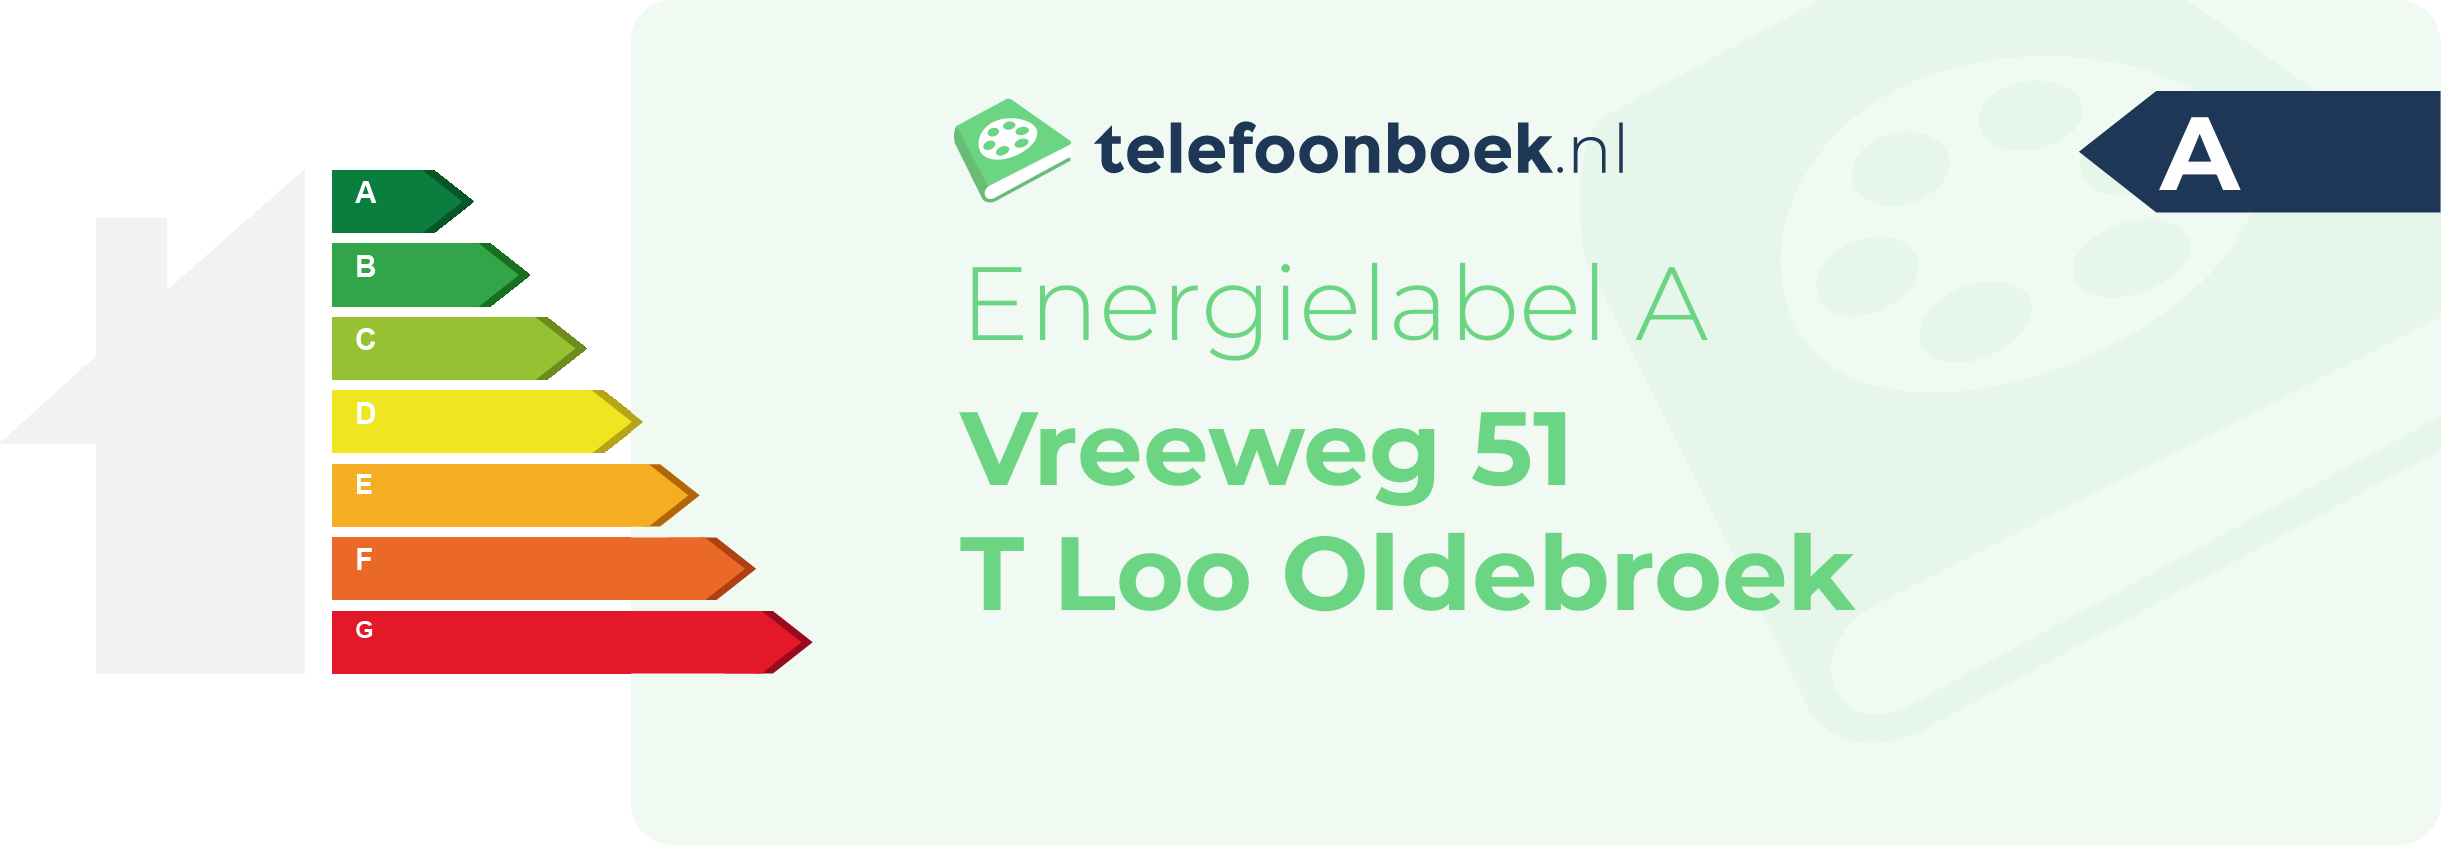 Energielabel Vreeweg 51 T Loo Oldebroek